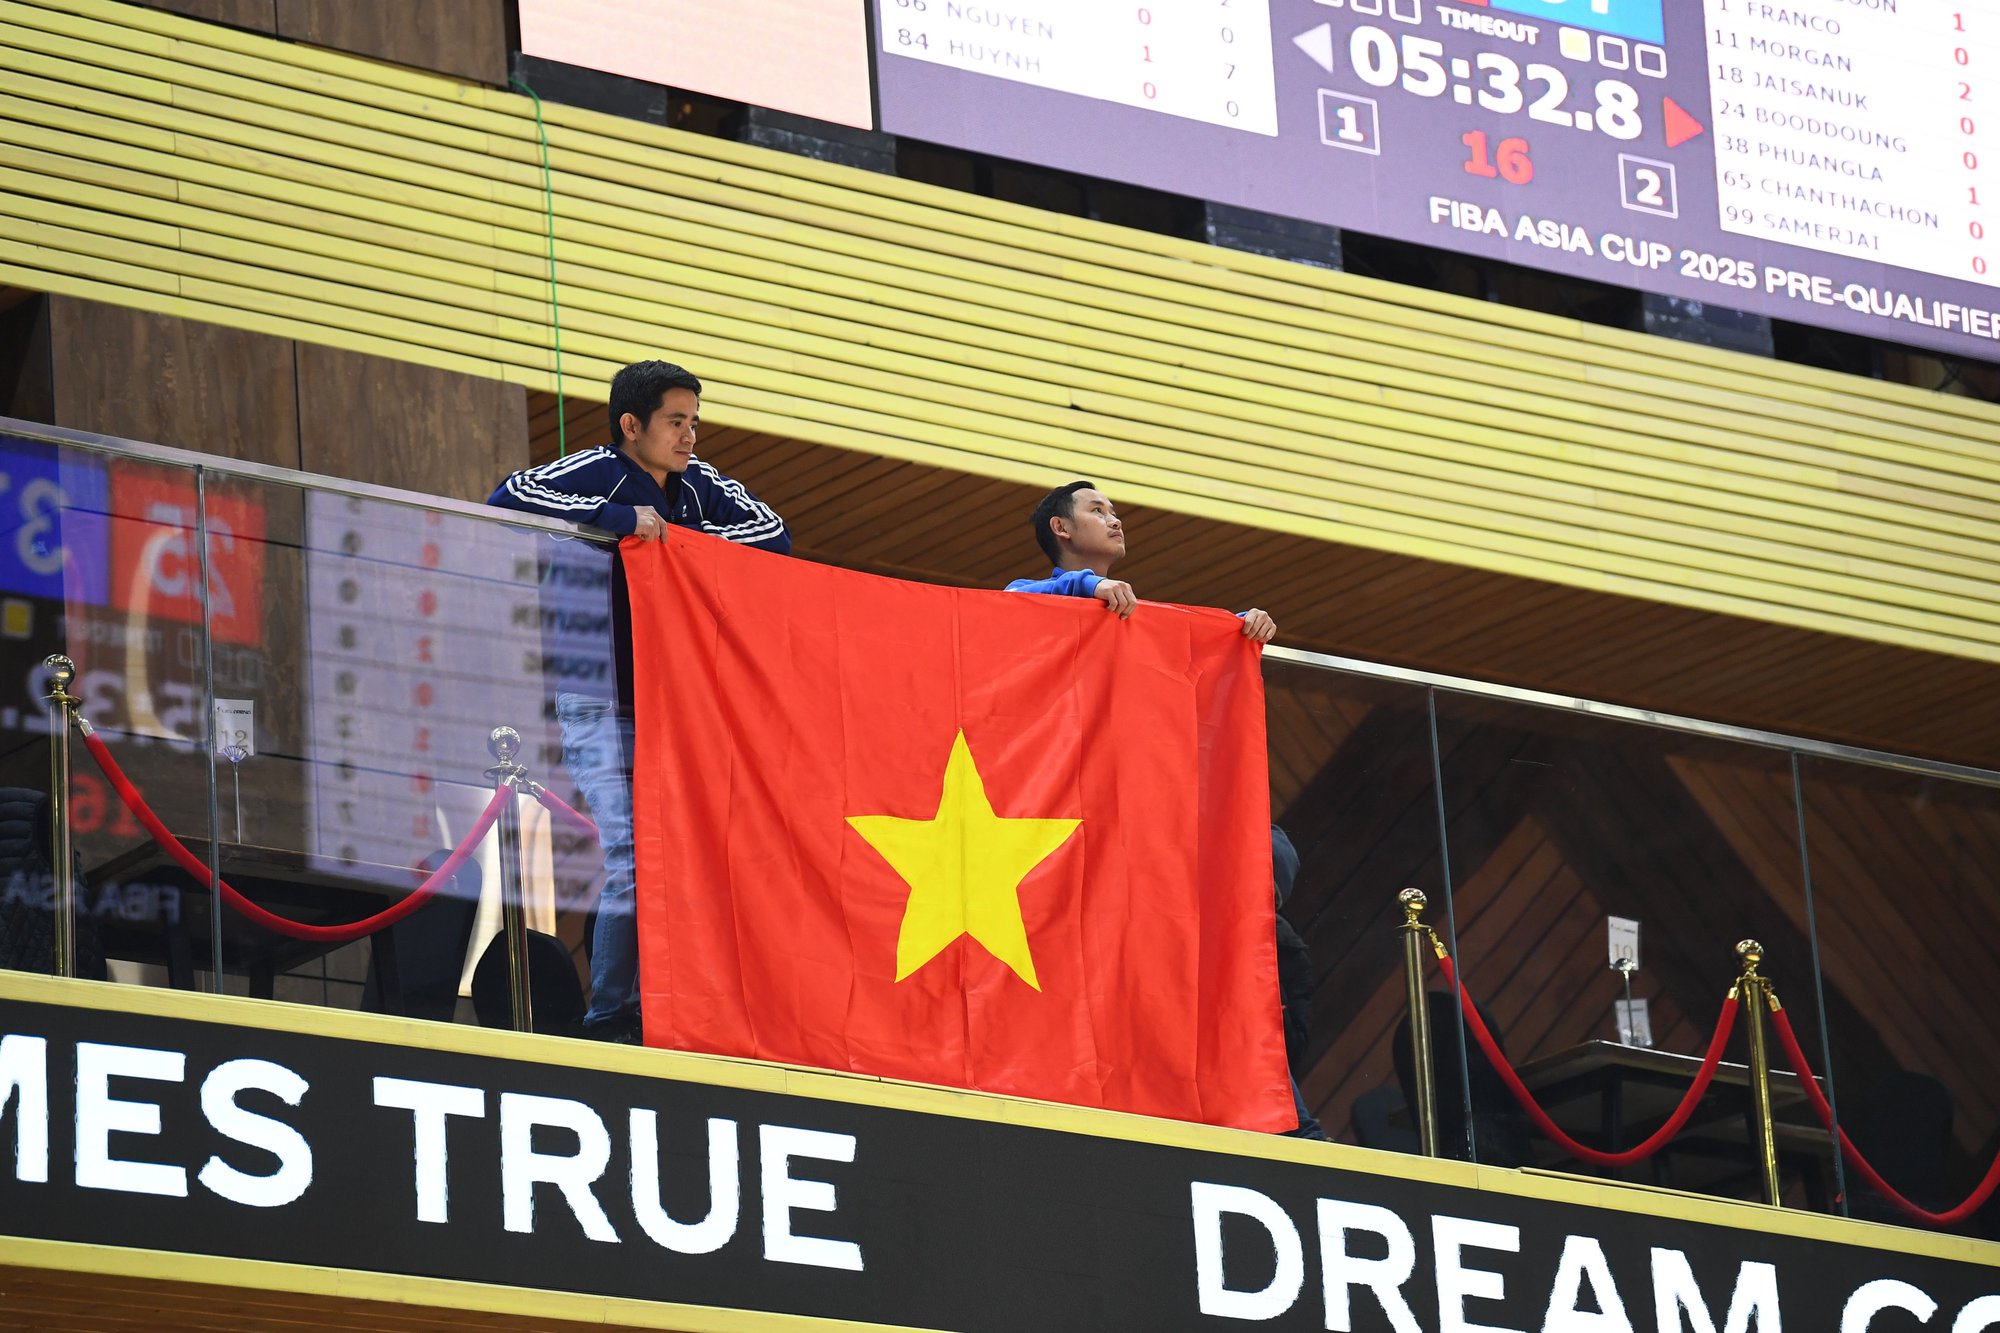 HLV đội tuyển bóng rổ Việt Nam rung động vì cổ động viên xa xứ tại vòng sơ loại FIBA Asia Cup 2025 - Ảnh 2.